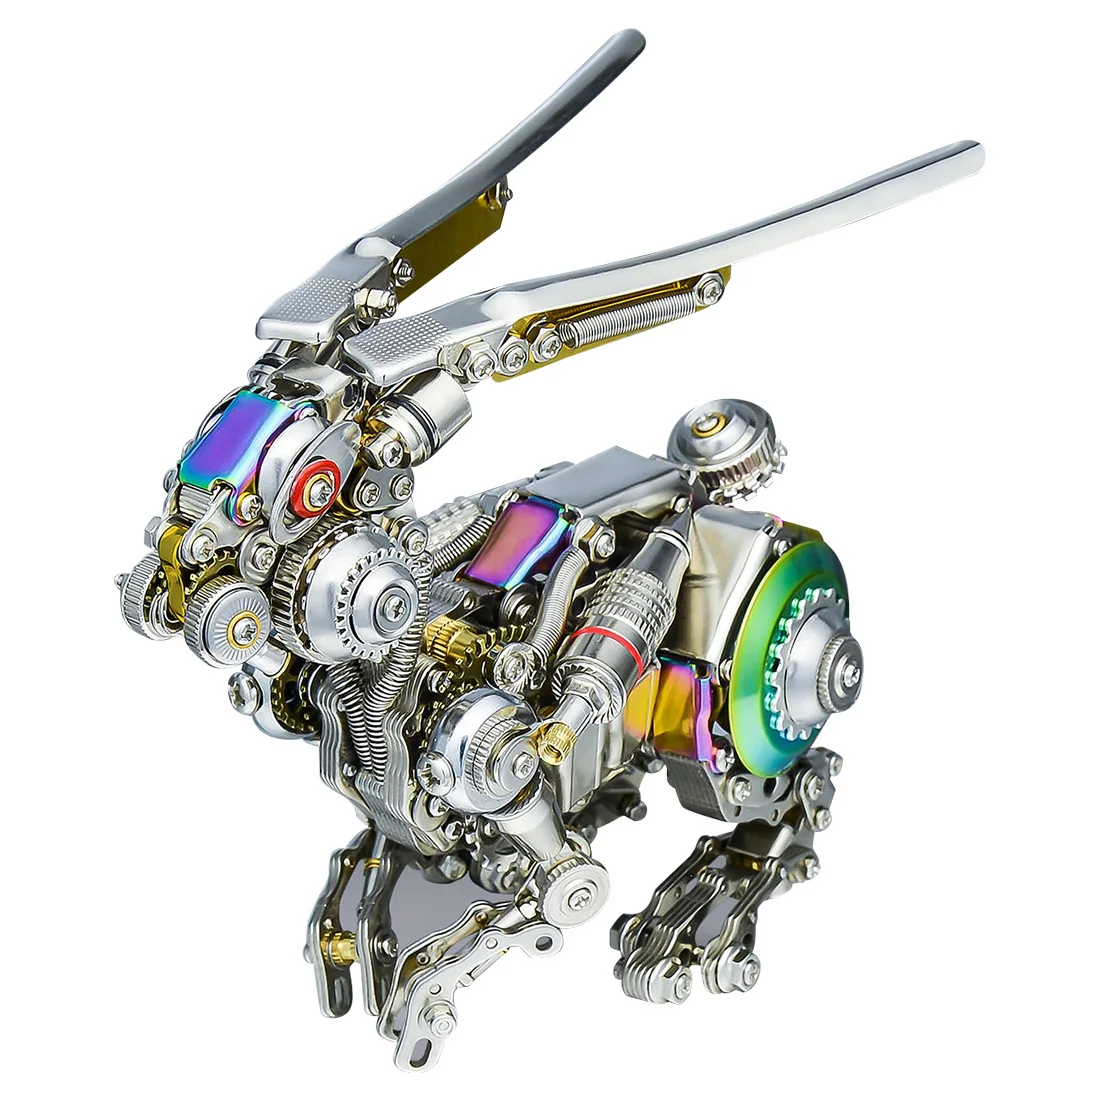 

DIY Assembly 3D Metal Punk Mechanical Rabbit Model Puzzle Set (500PCS/Multicolored / Primary Color )